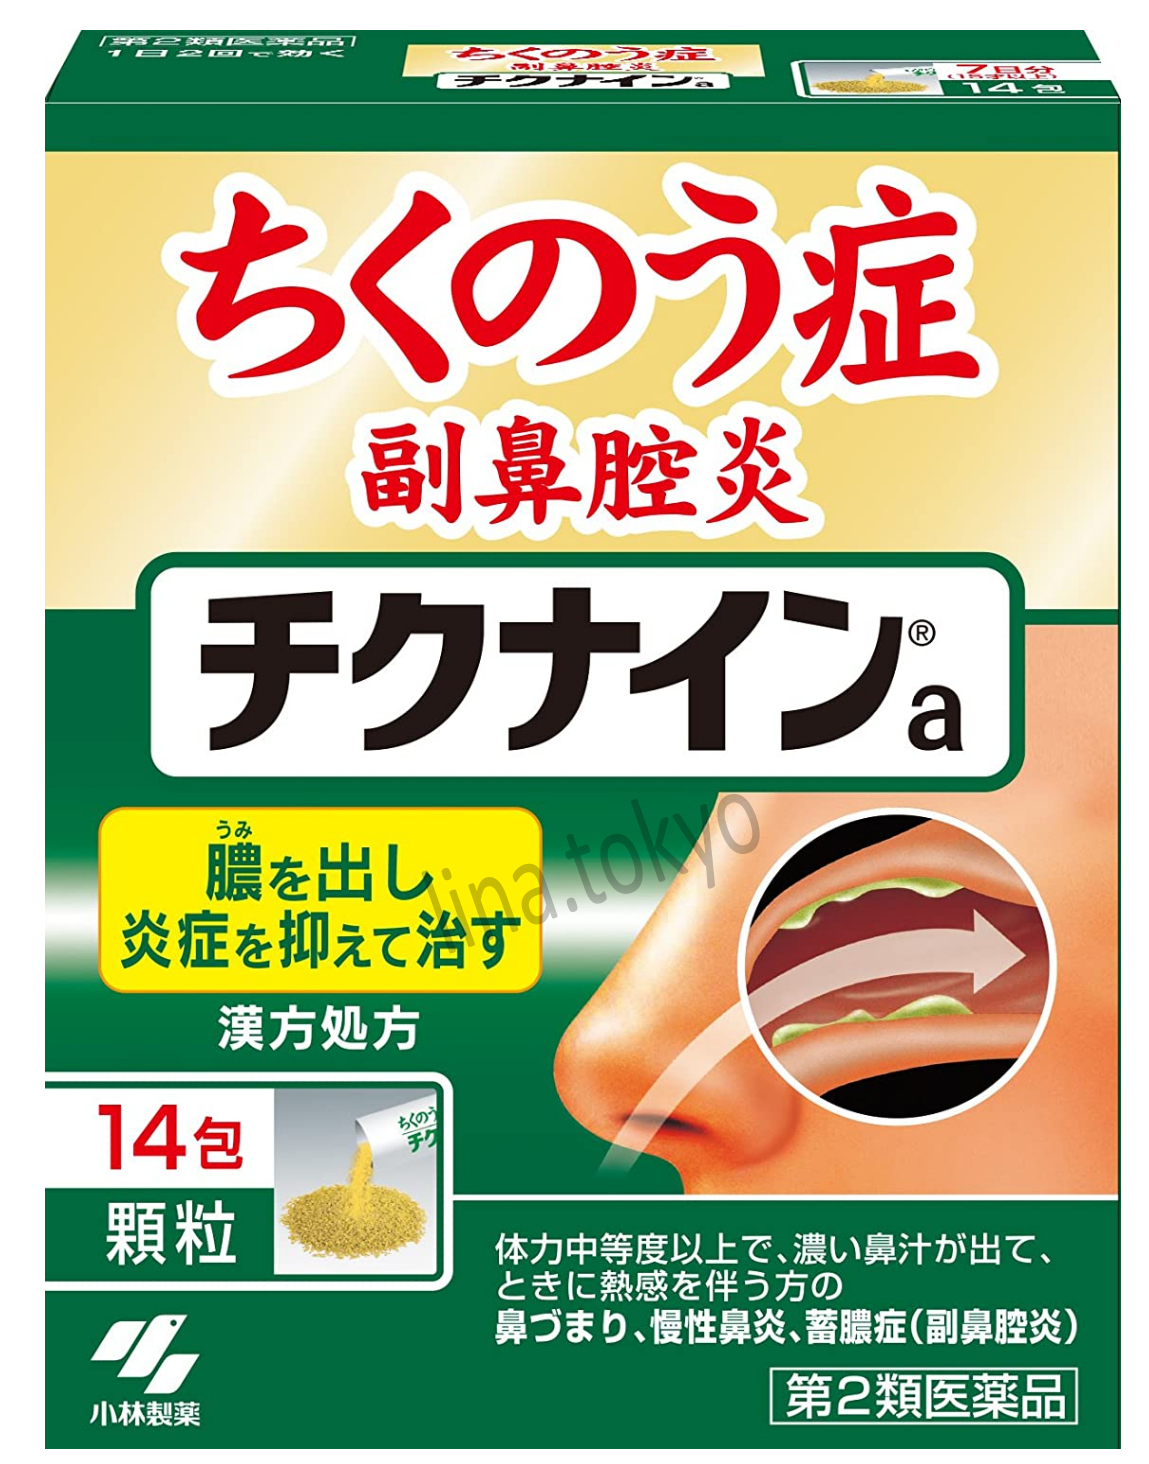 Thuốc trị viêm xoang mũi nhật bản Chikunain Kobayashi dạng bột 14 gói thuốc Đông y trị viêm mũi mãn tính, cải thiện viêm xoang do dị ứng, nhiễm khuẩn, ngăn chặn sự tạo mủ, làm dịu khi thở (H4012 ) (Miễn phí giao hàng)